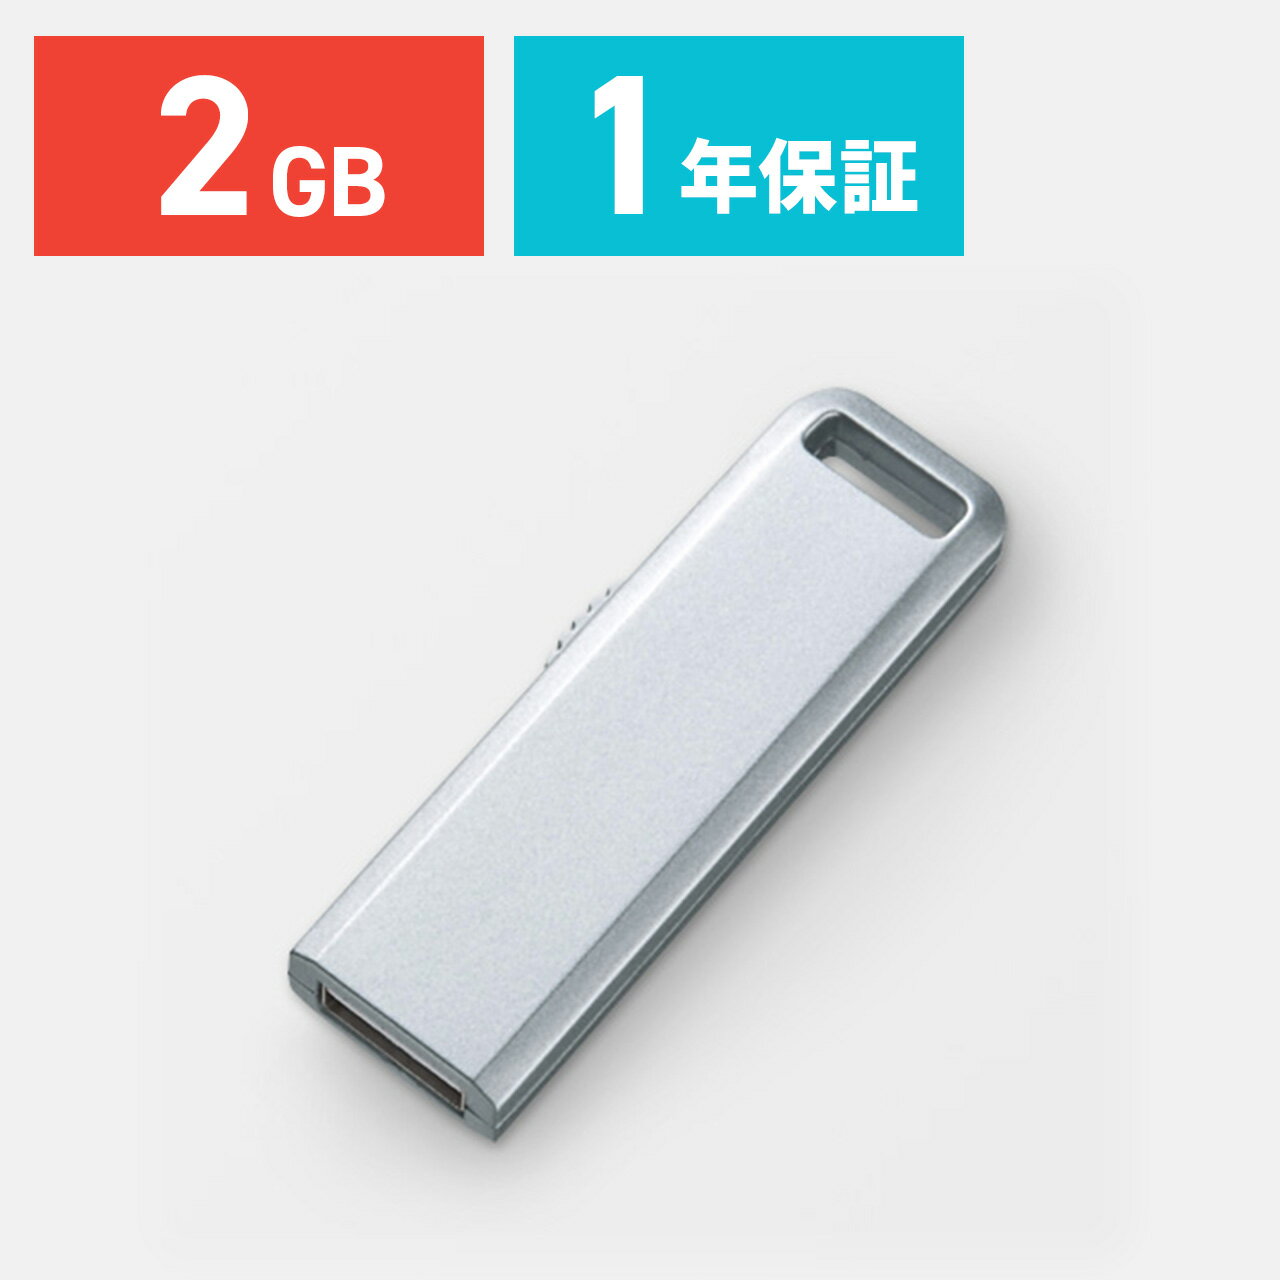 USBメモリ 2GB シルバー スライドタイプのUSBフラッシュメモリーUSBメモリー 【サンワダイレクト限定品】